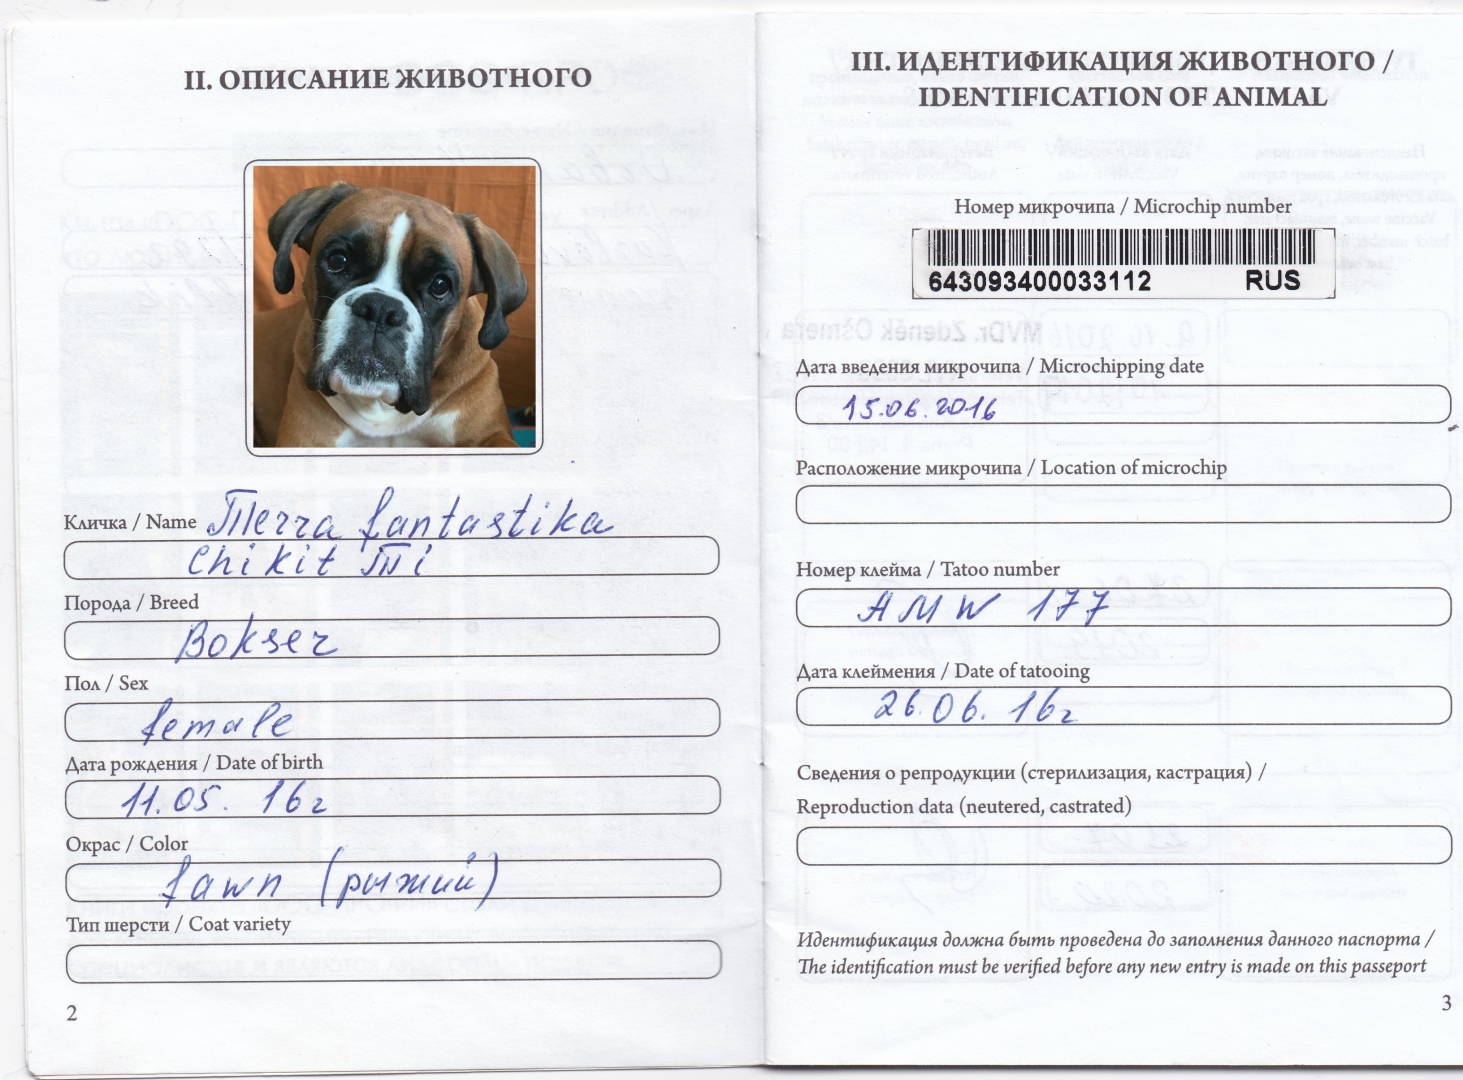 Фото на ветеринарный паспорт собаки требования